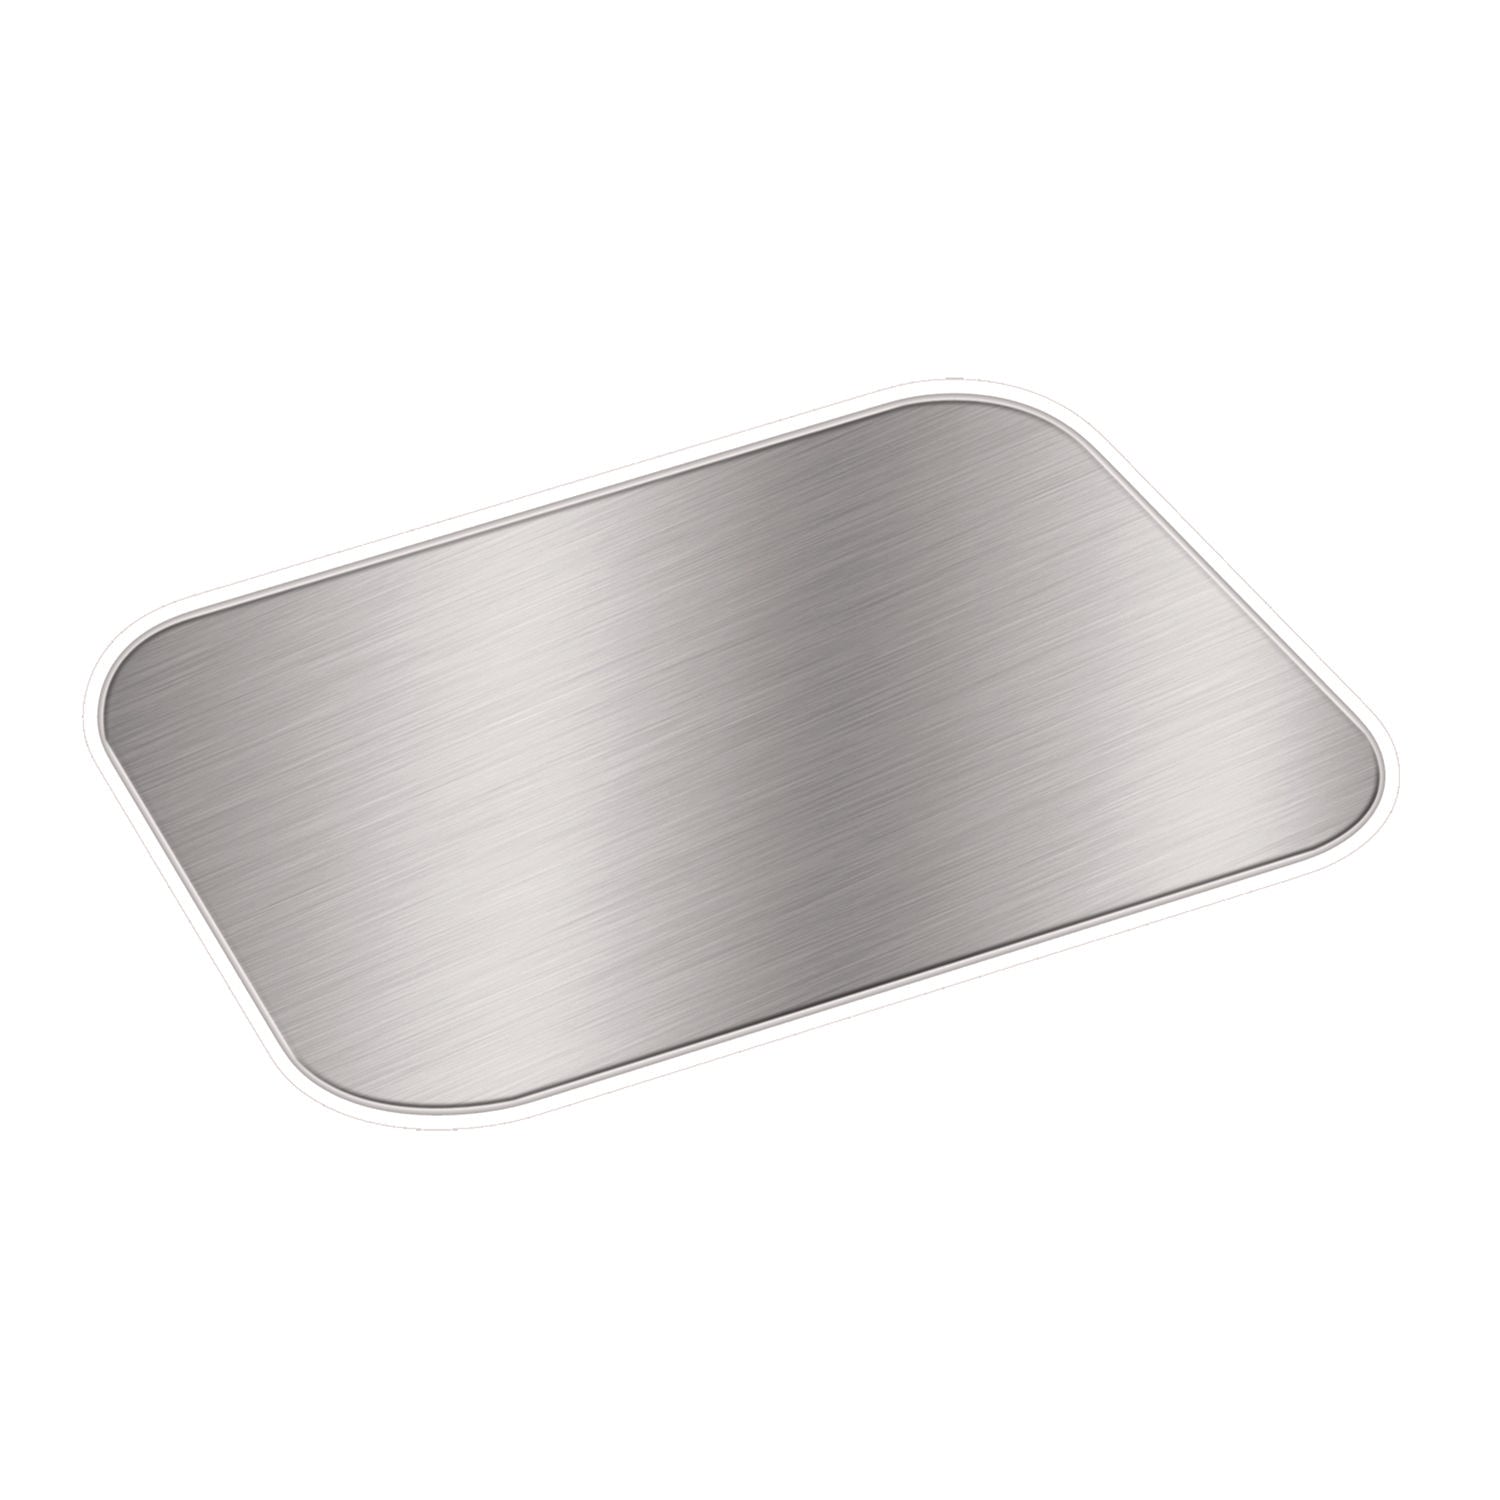 foil-laminated-board-lids-fits-2061-2062-588-x-844-aluminum-500-carton_hfa2062l - 1